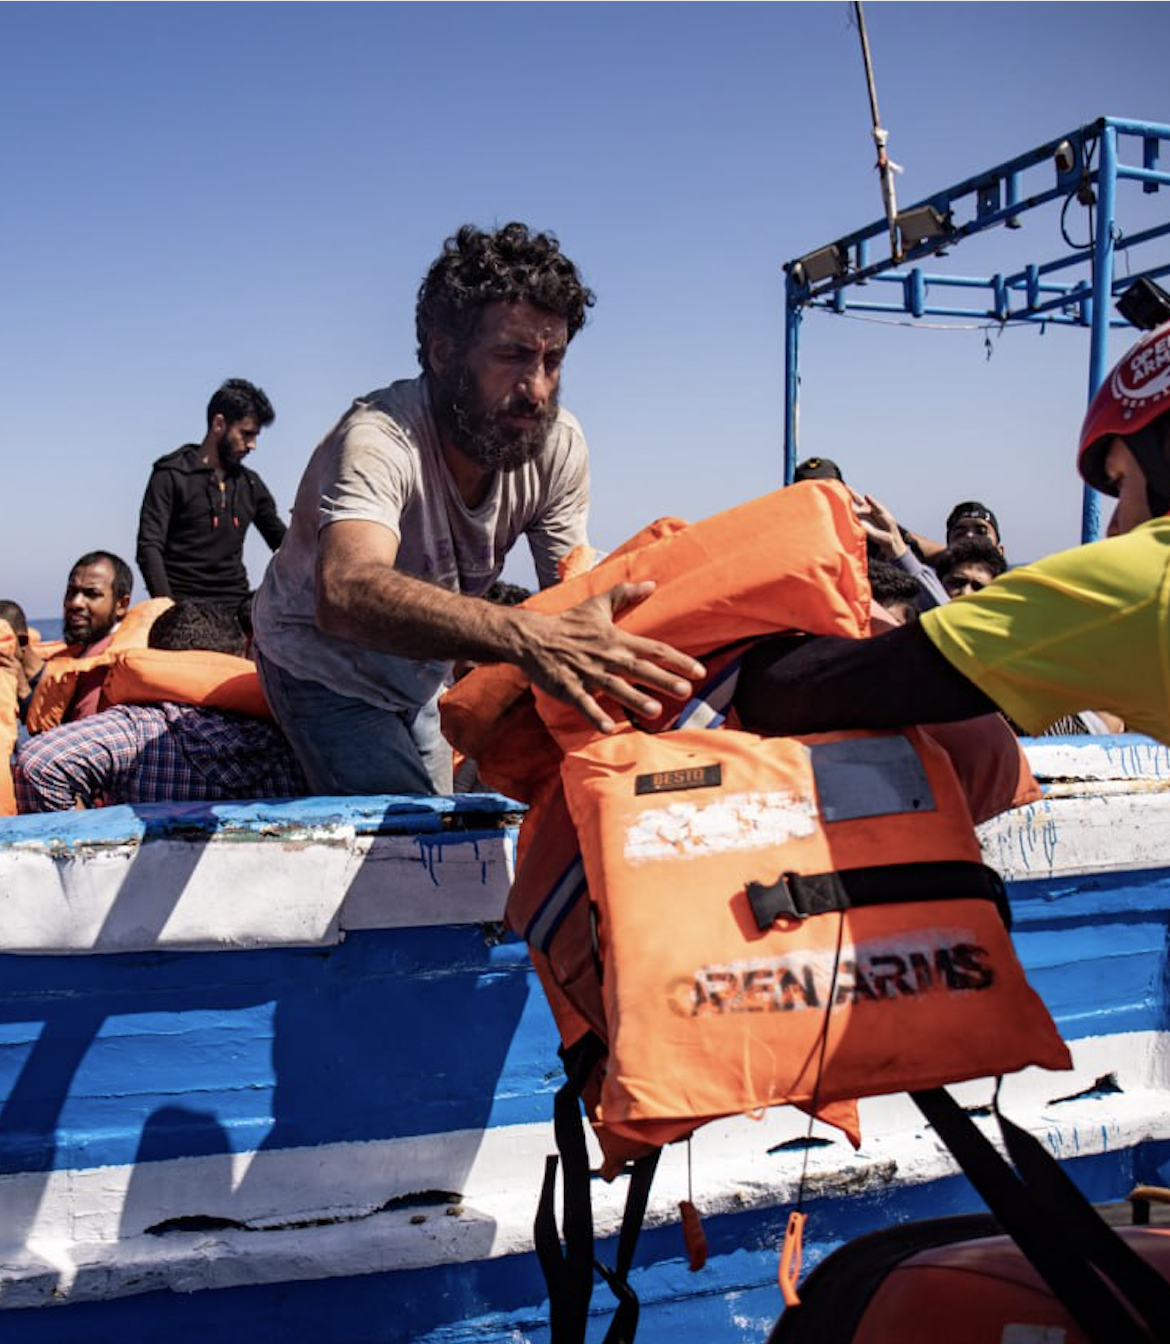 Bloqueig de 20 dies i sanció a l’open arms després de desembarcar 195 persones rescatades en port italià